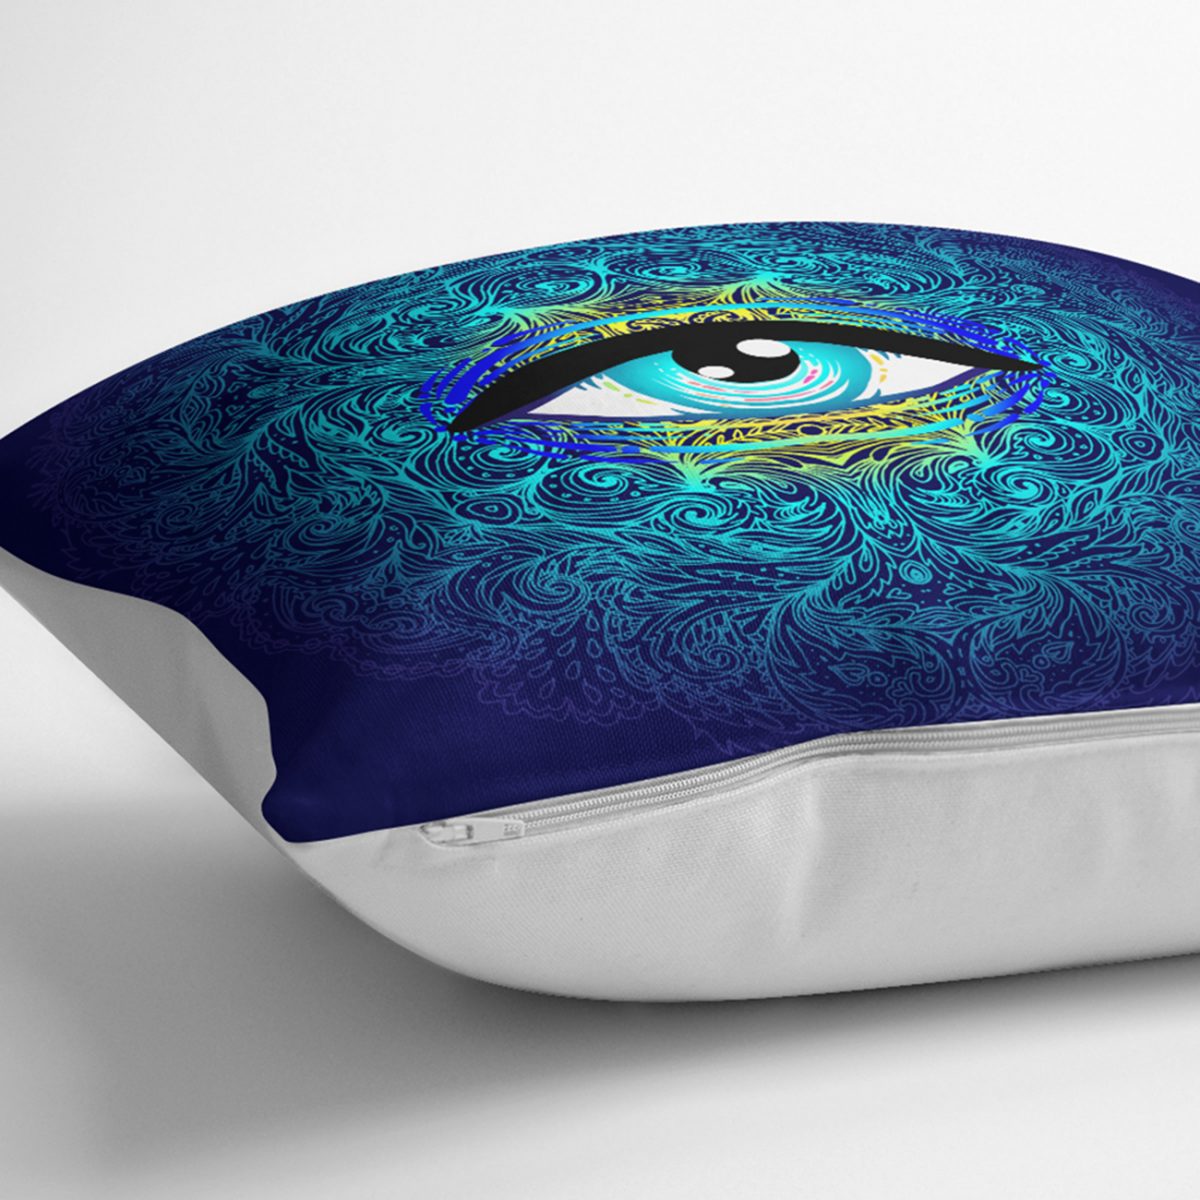 Blue Eye Özel Tasarım Dijital Baskılı Kırlent Kılıfı Realhomes